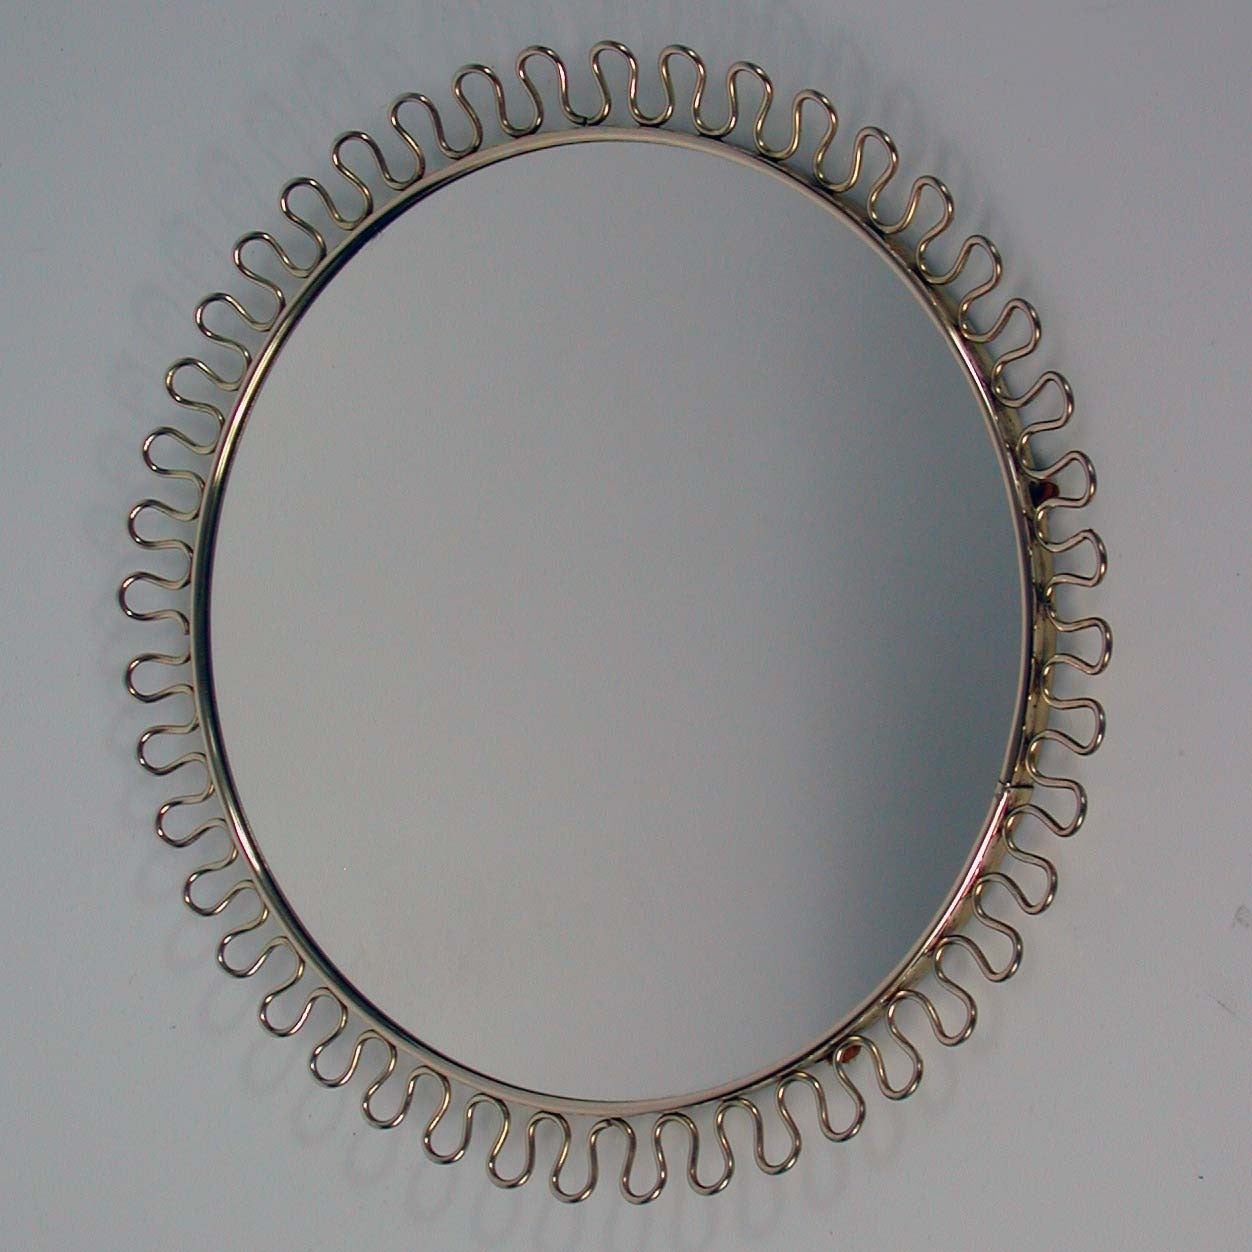 Mid-Century Modern Petite Sculptural Brass Loop Mirror attr. to Josef Frank for Svenskt Tenn, 1950s